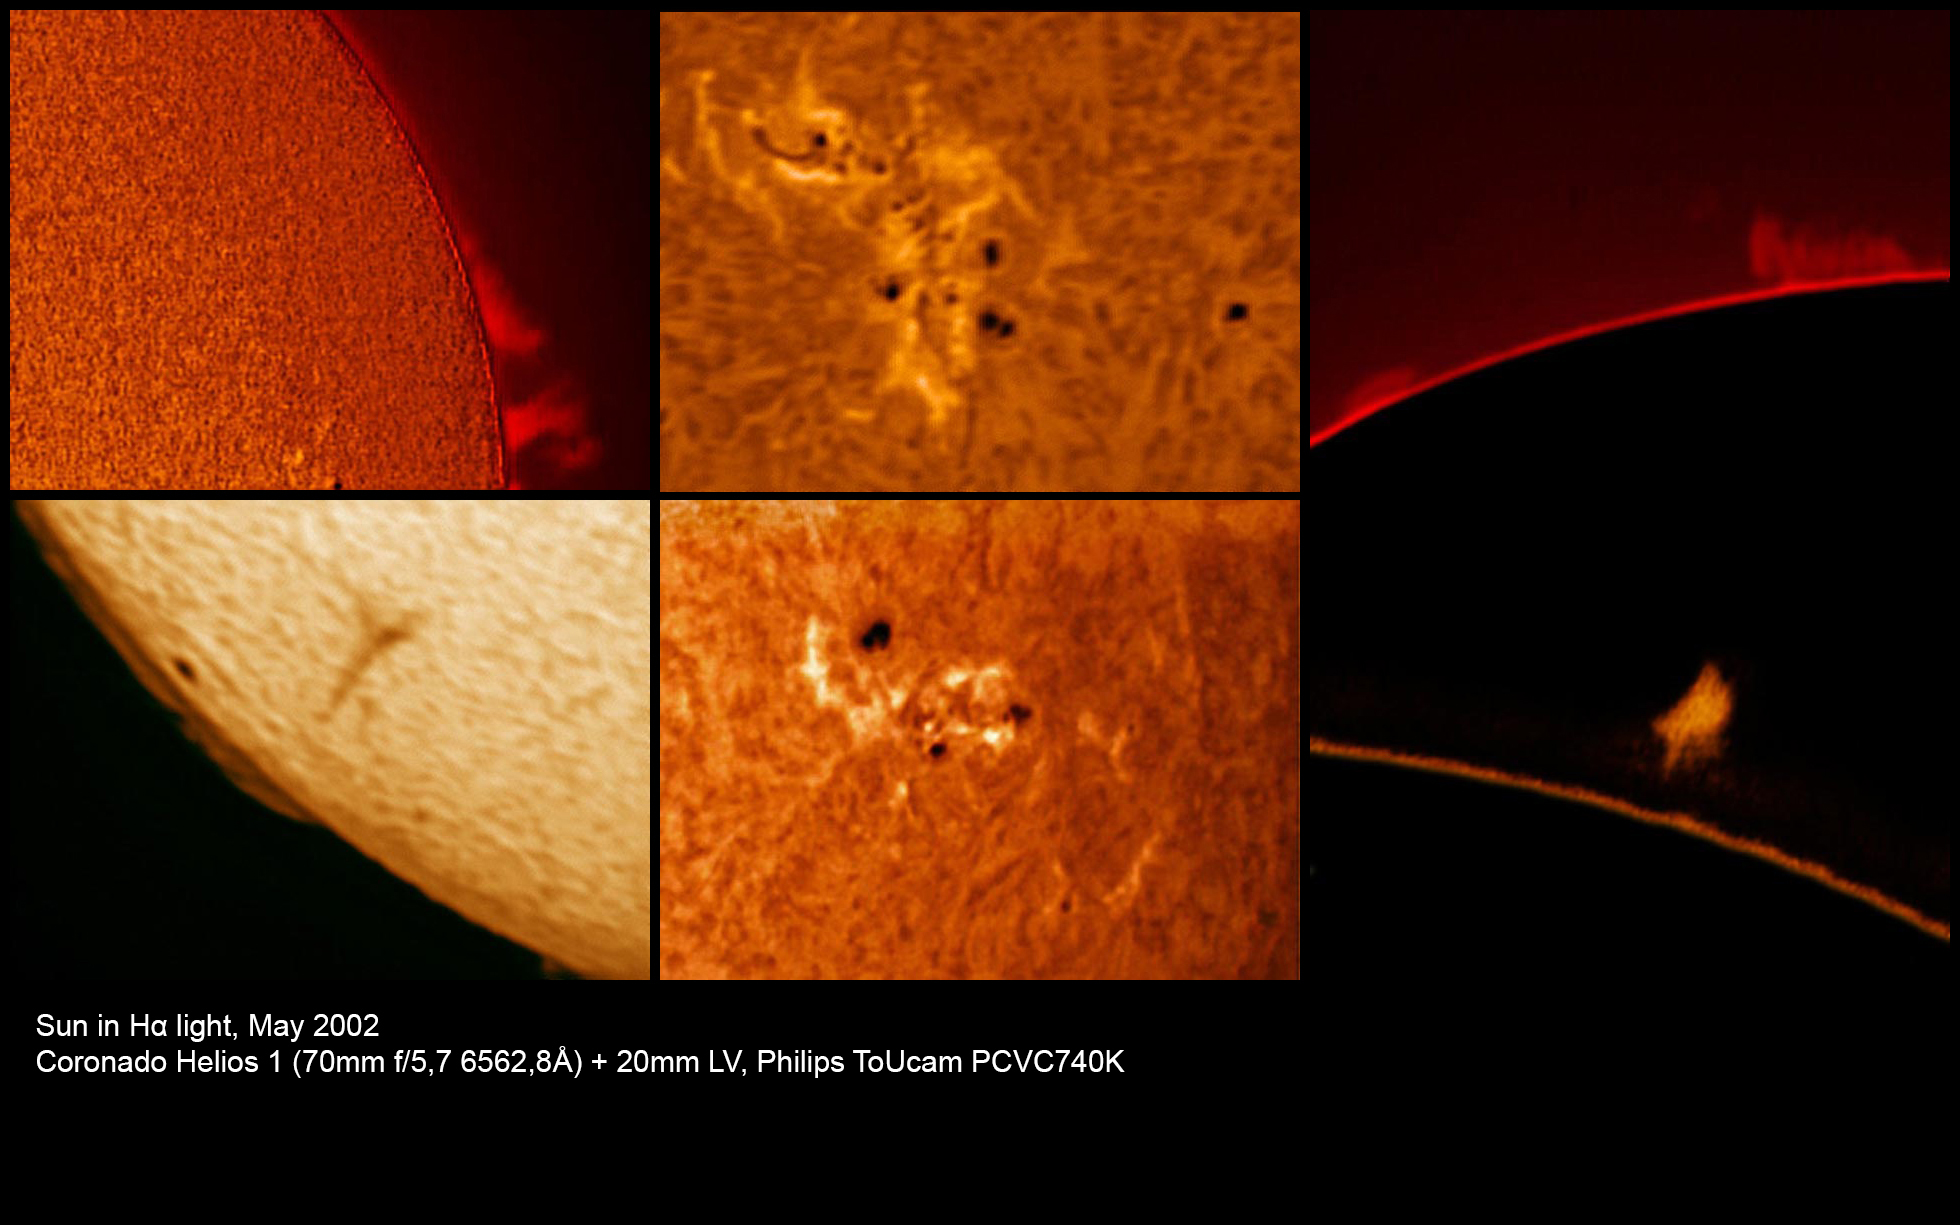 Sun in Hα light, Coronado Helios 1 (70mm f/5,7 6562,8Å) + 20mm LV, Philips ToUcam PCVC740K